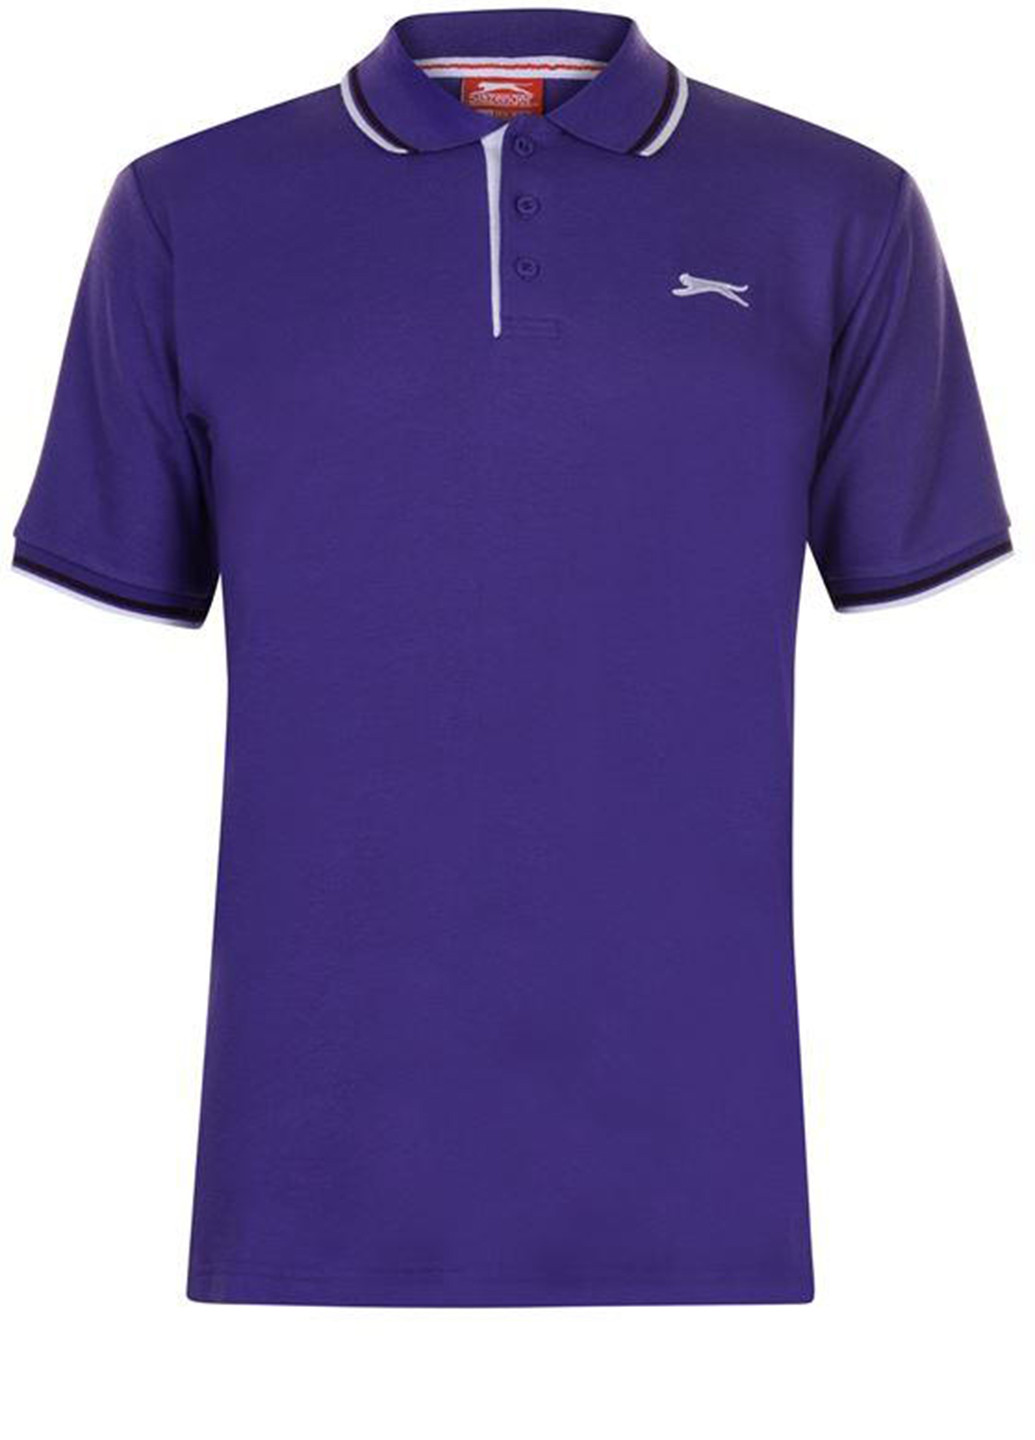 Фиолетовая футболка-поло для мужчин Slazenger